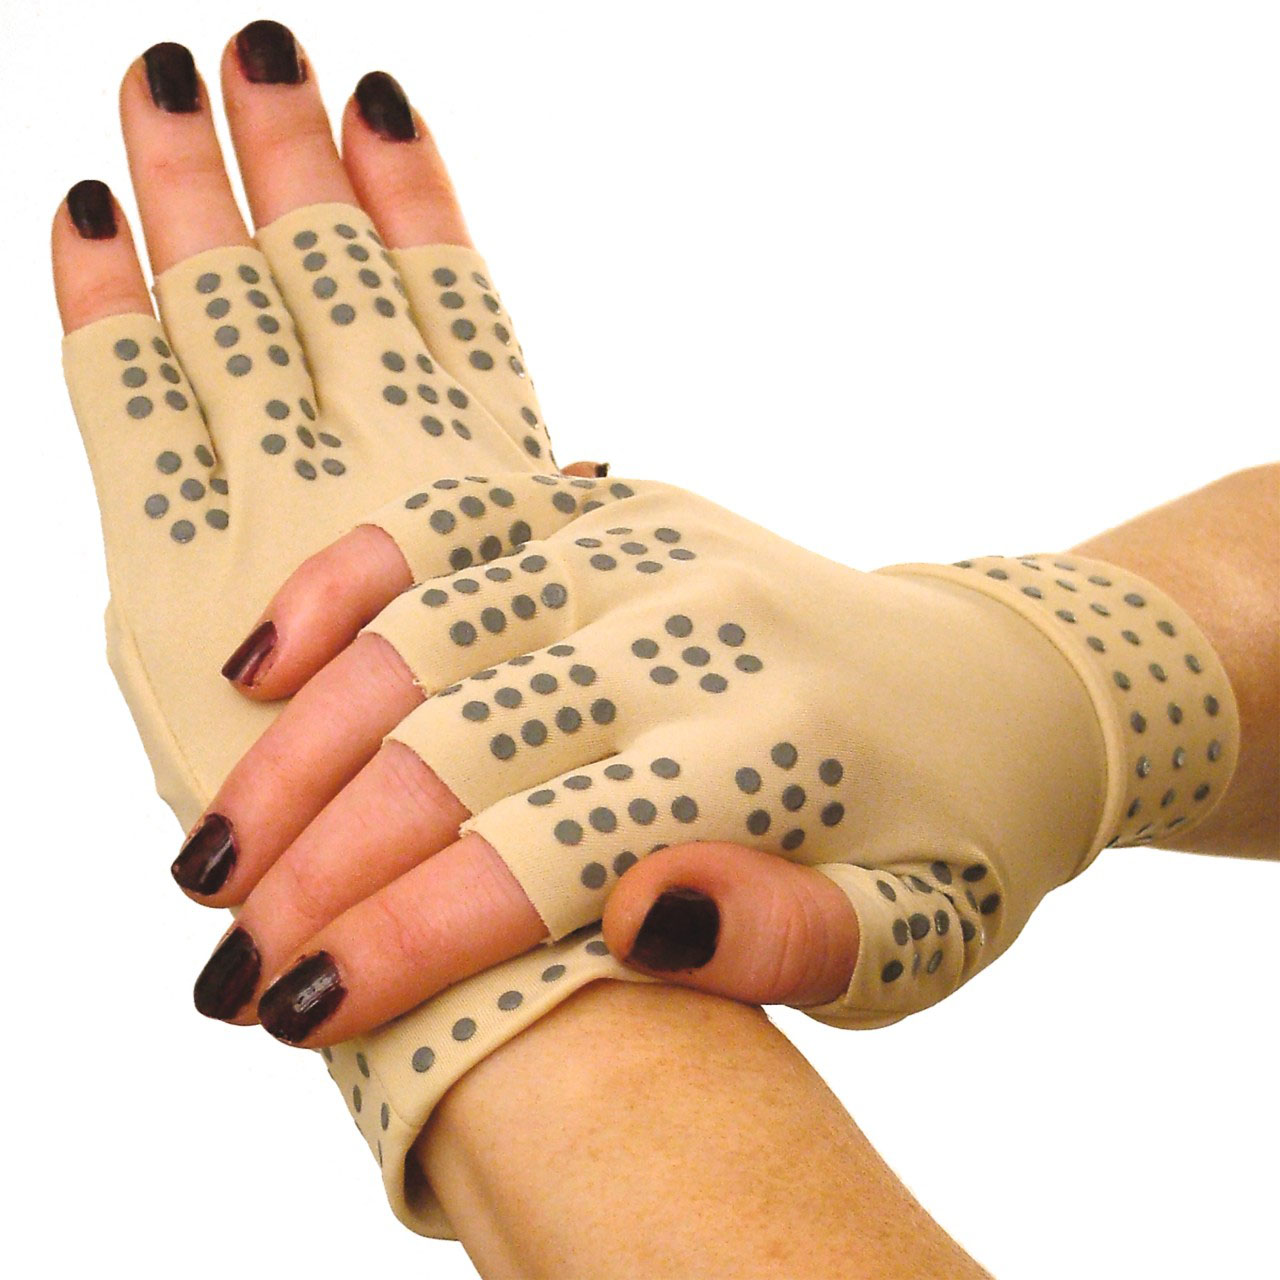 Magnetic Compression Gloves